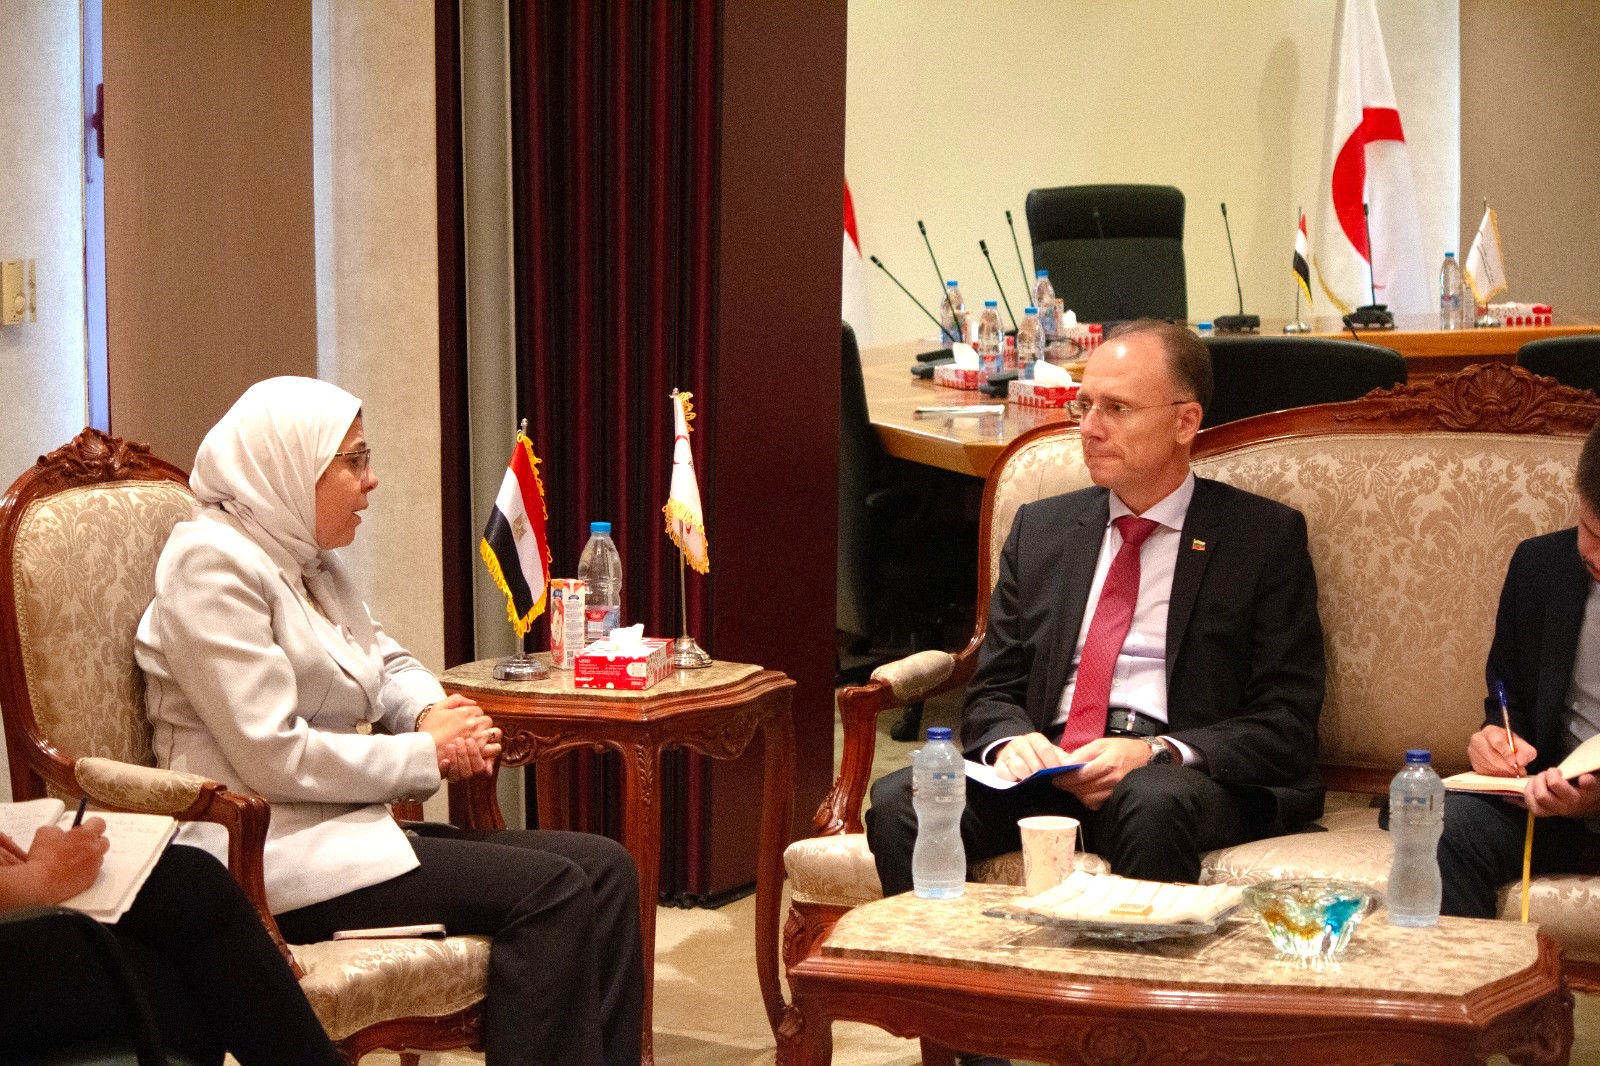 Посланик Деян Катрачев проведе среща с главния изпълнителен директор на Египетския червен полумесец д-р Амал Имам